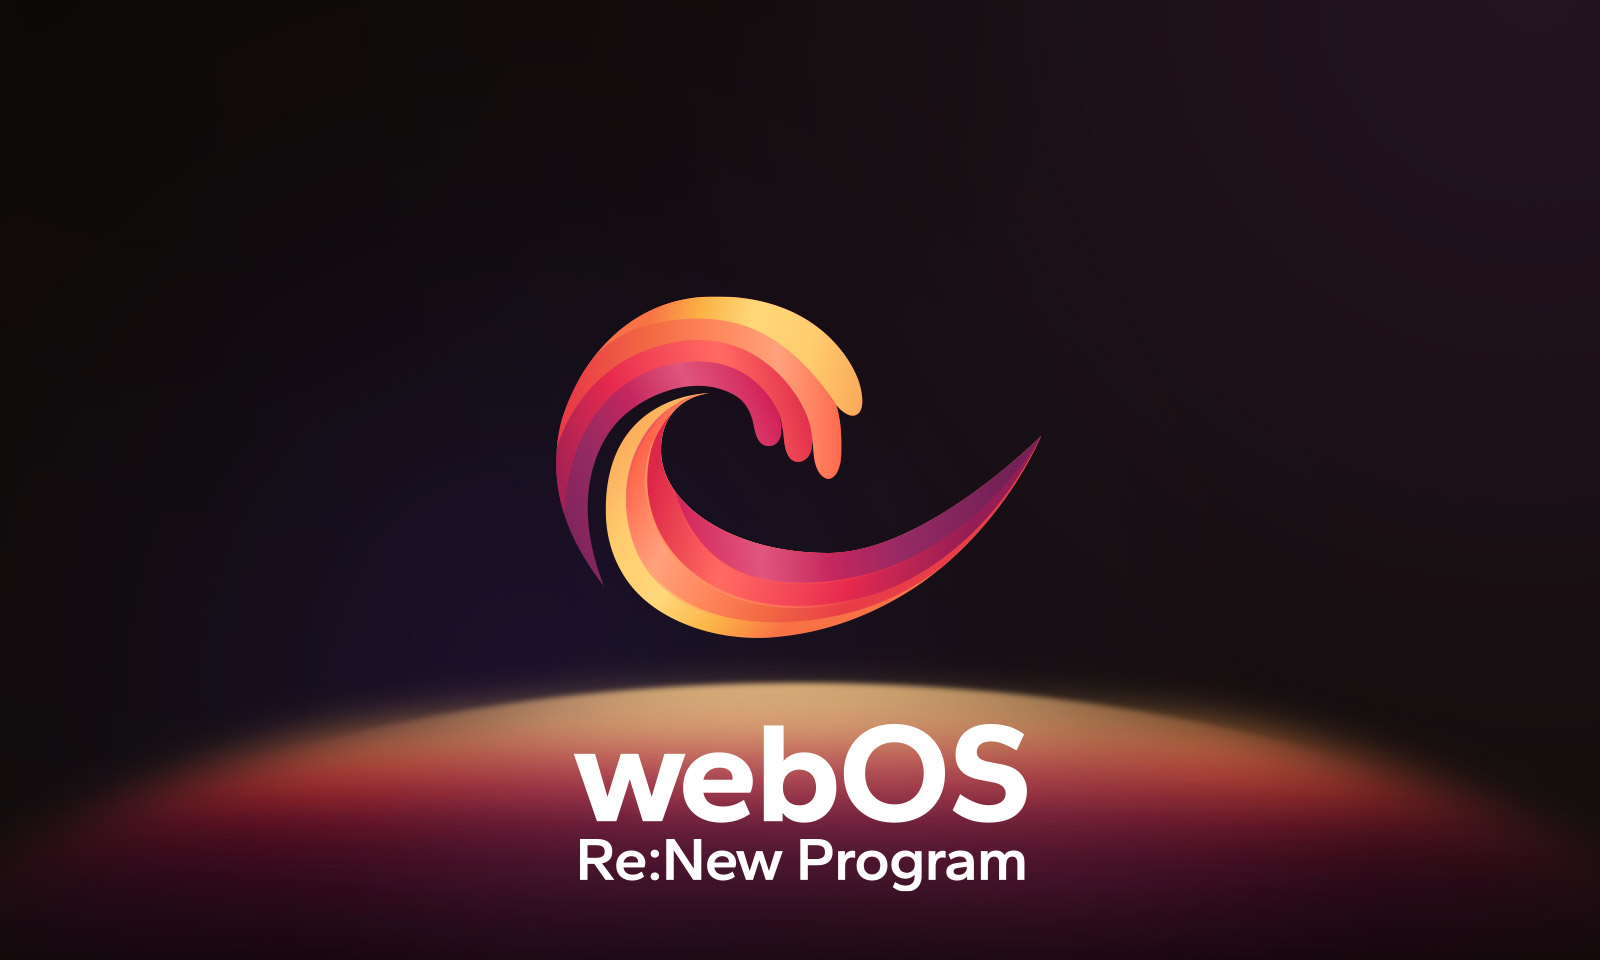 Le logo webOS flotte au centre sur un fond noir, et l’espace en dessous est éclairé aux couleurs rouge, orange et jaune du logo. On peut lire « webOS Re:New Program » sous le logo.